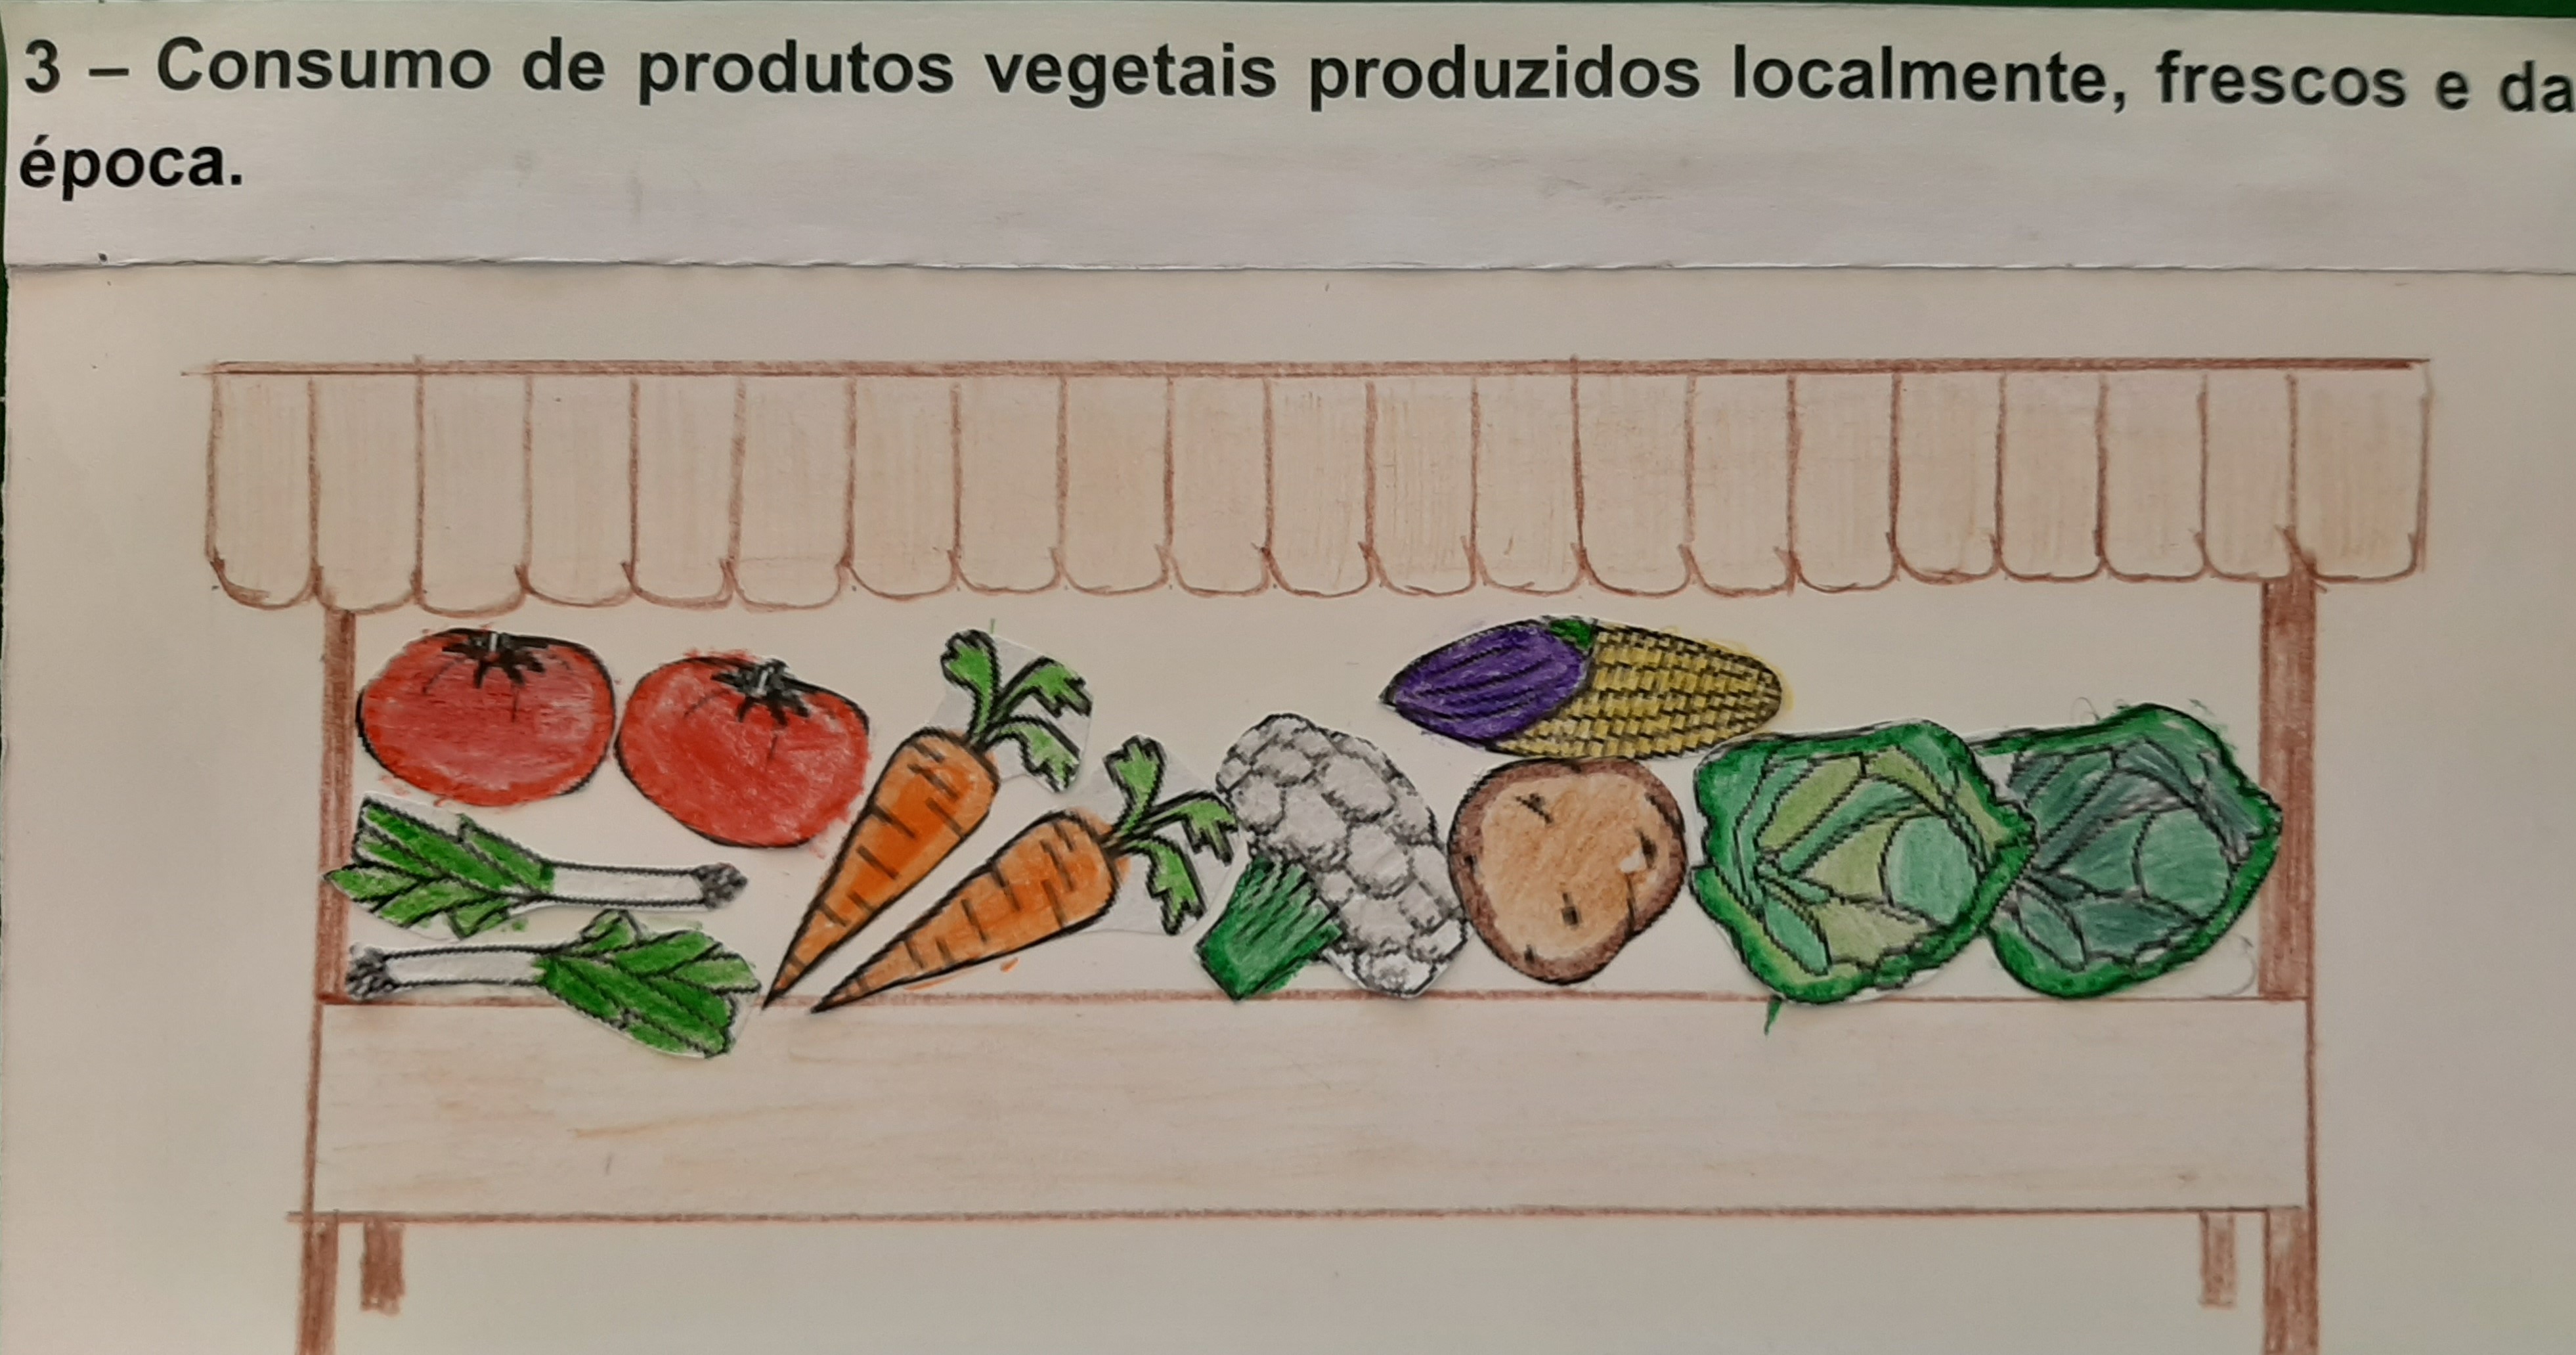 Consumo de produtos vegetais produzidos localmente, frescos e da época.